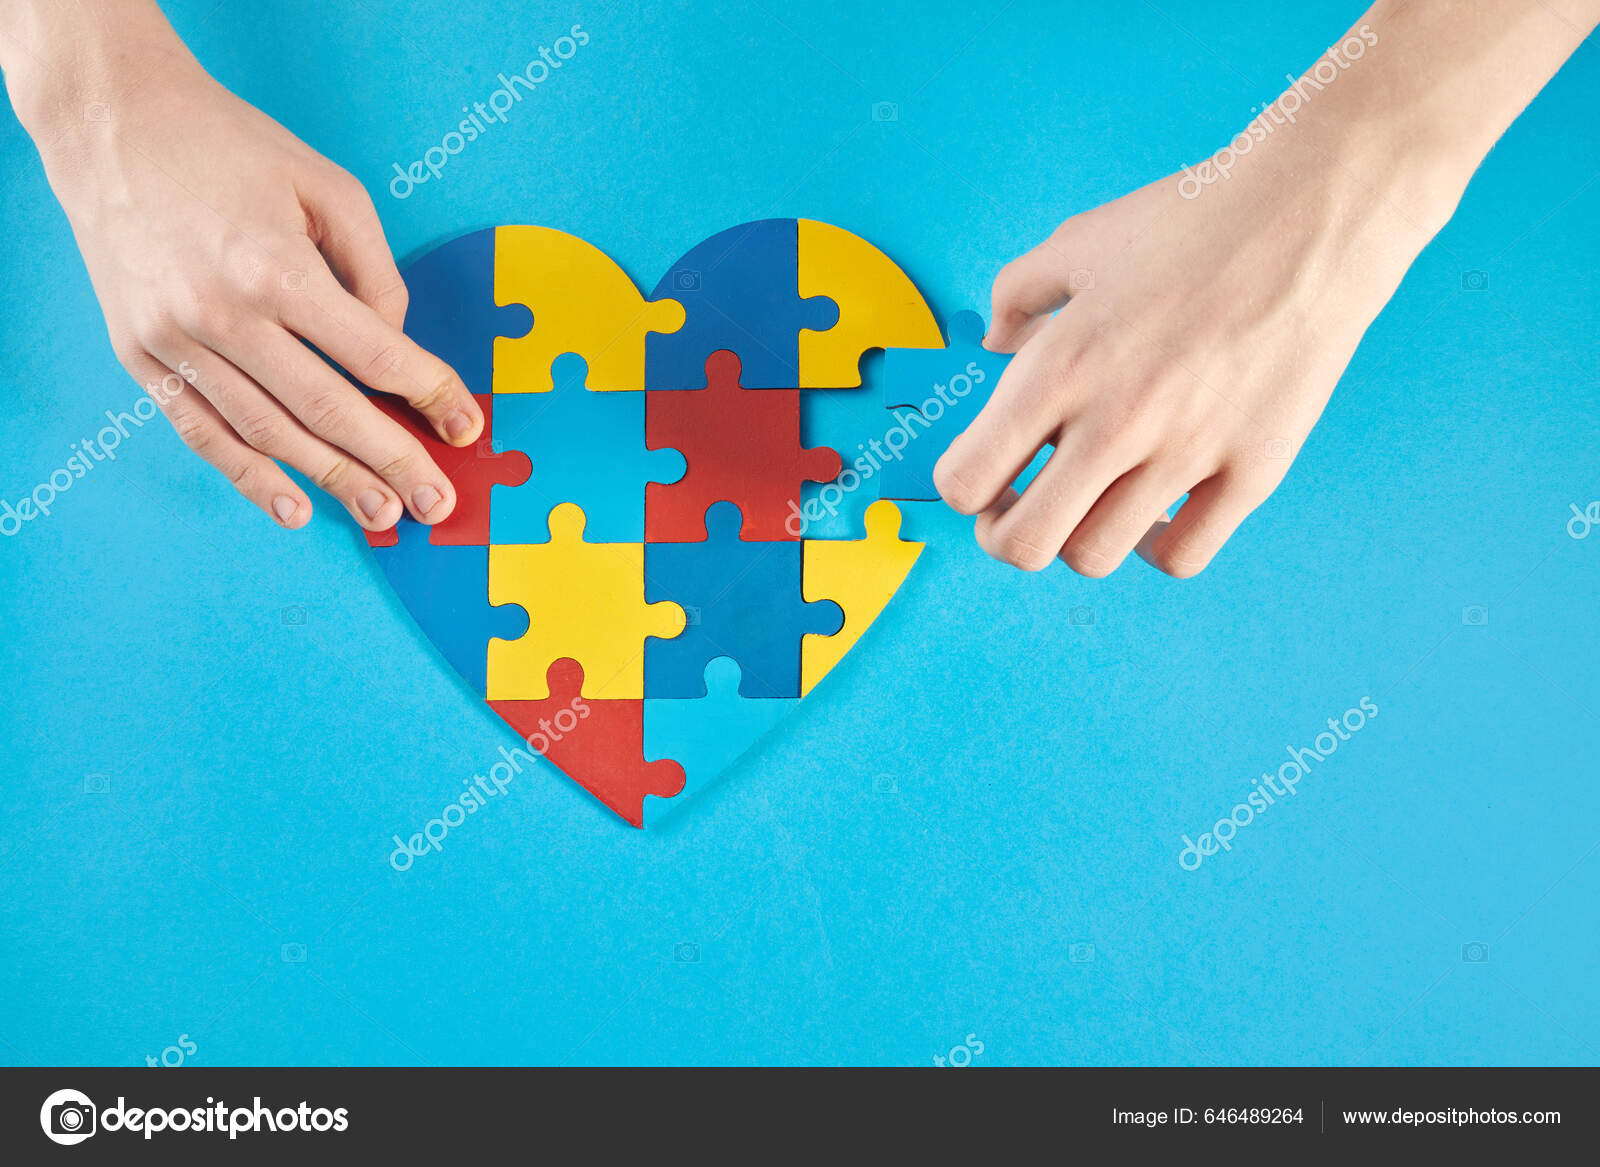  18 Pcs Colorful Heart Puzzle Piece Autism Awareness